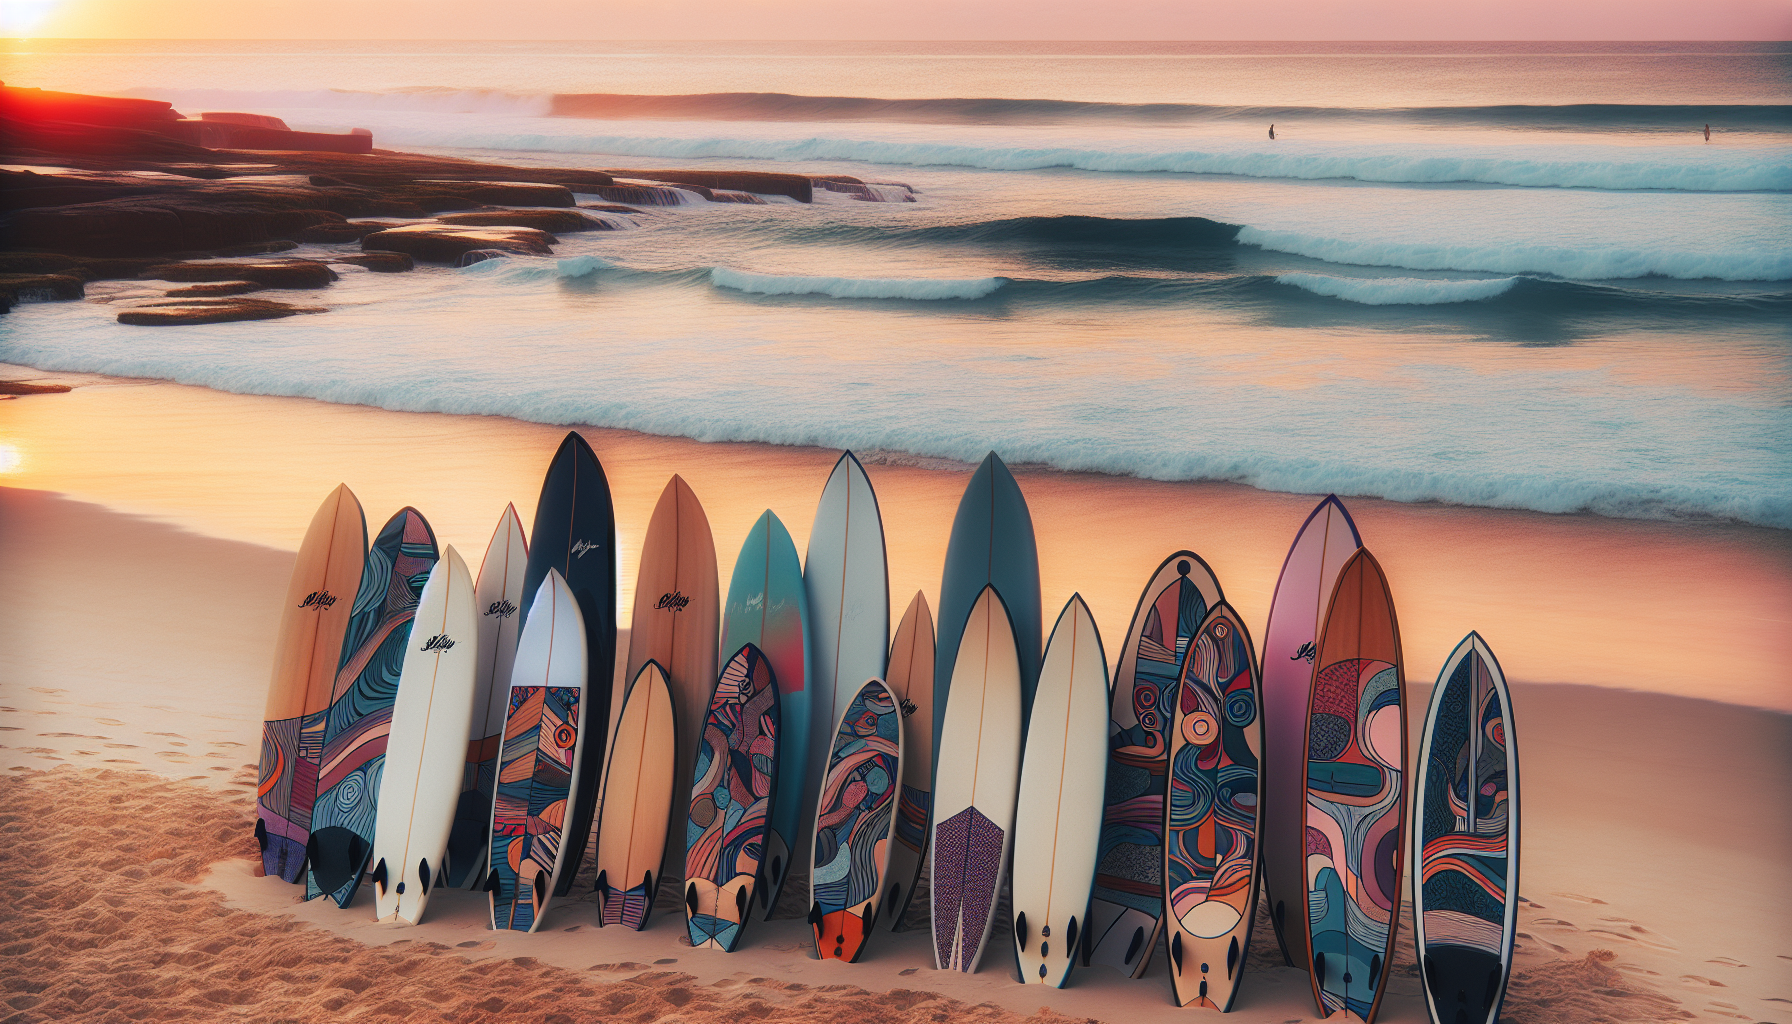 Matta Surfboards: Encontre a Prancha Perfeita para Dominar as Ondas